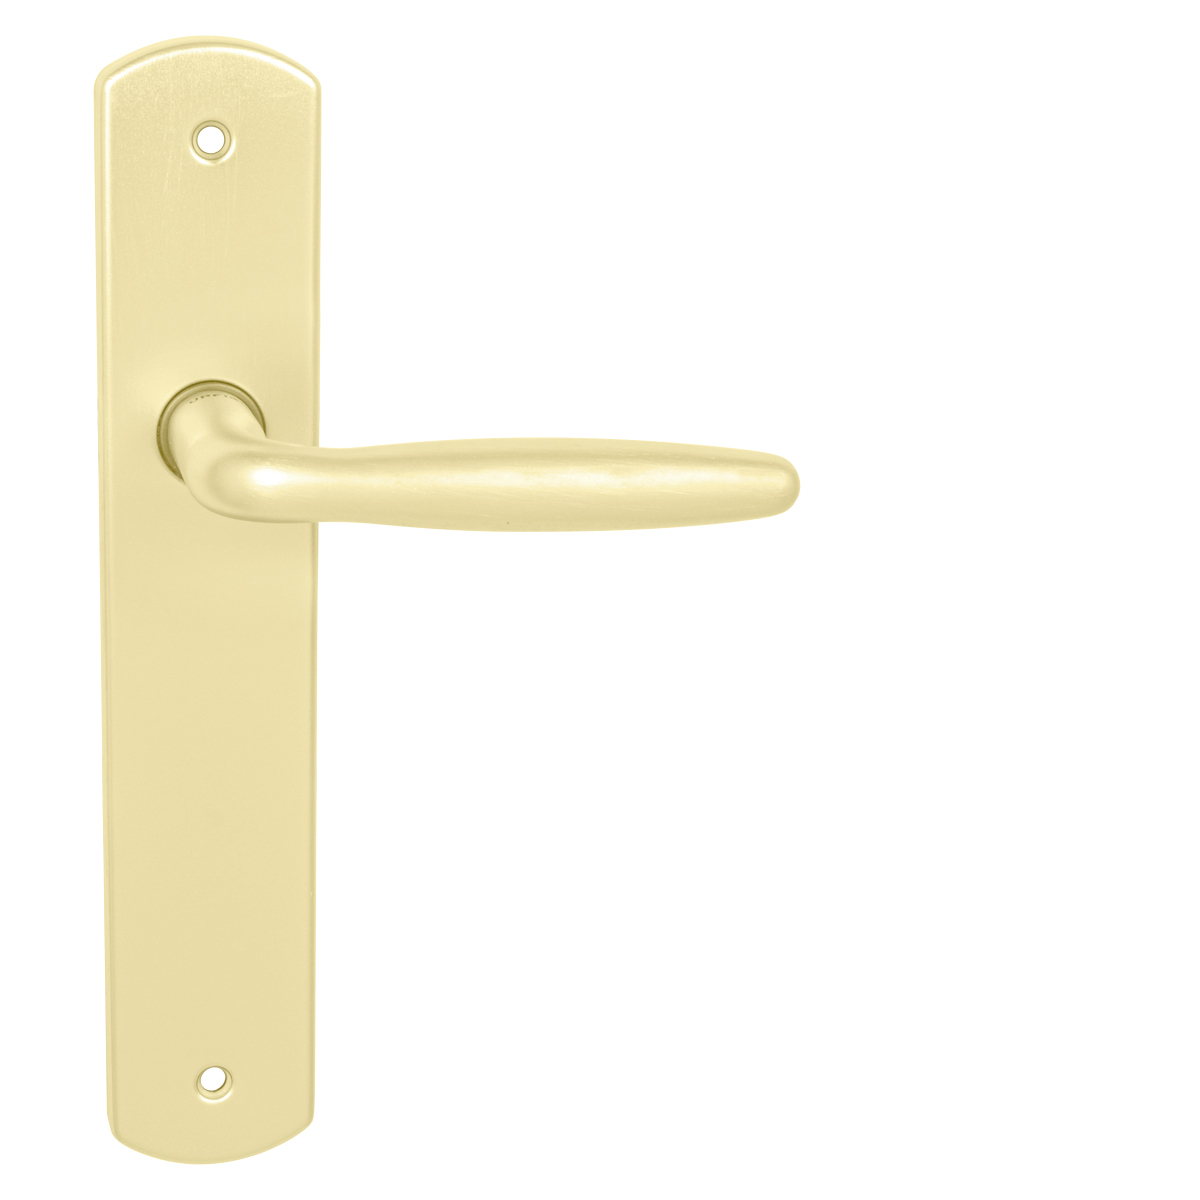 UC - VERONA - VS WC kľúč, 72 mm, kľučka/kľučka